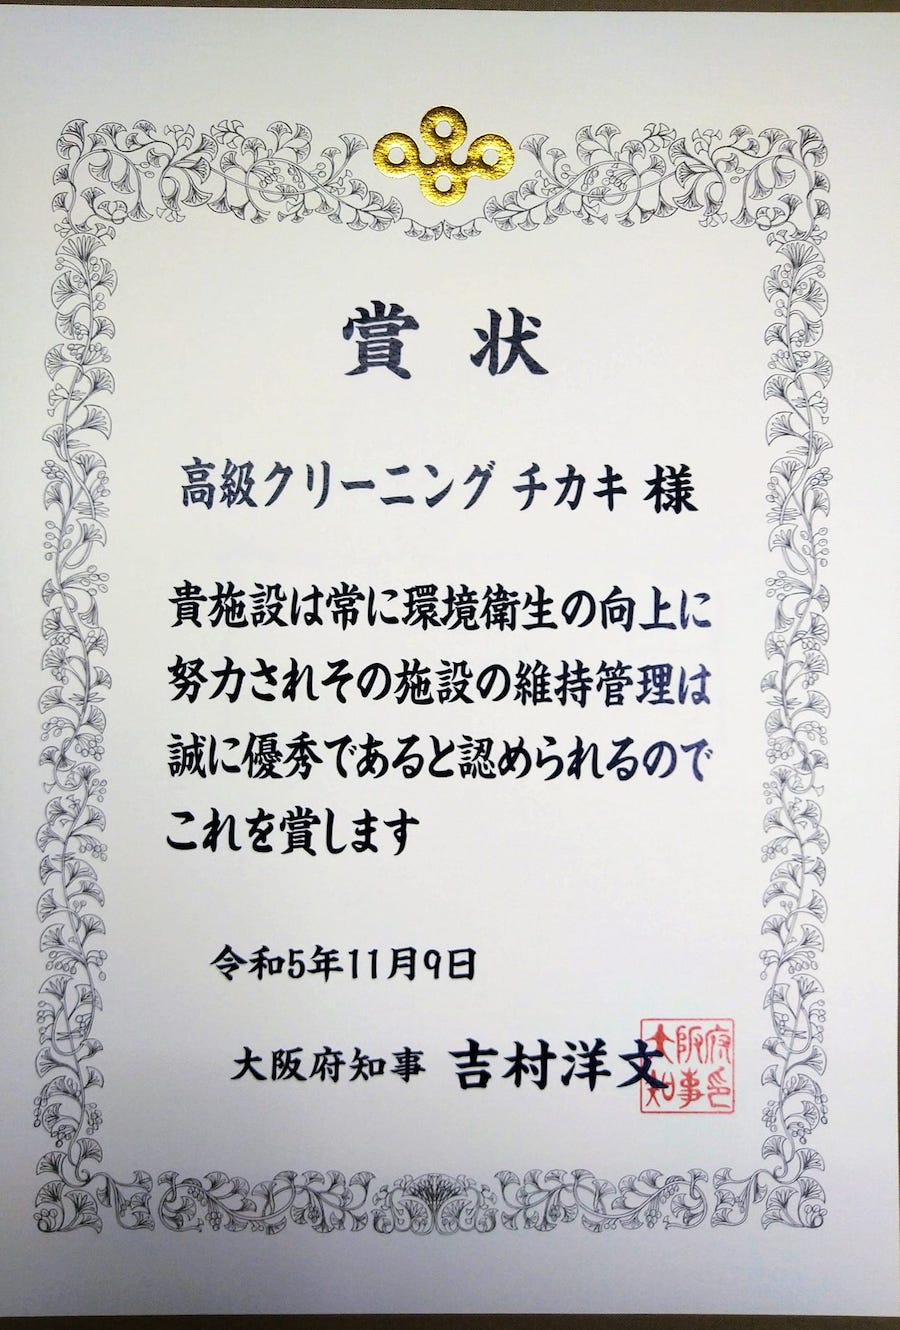 令和5年度、大阪府知事表彰を受けました!